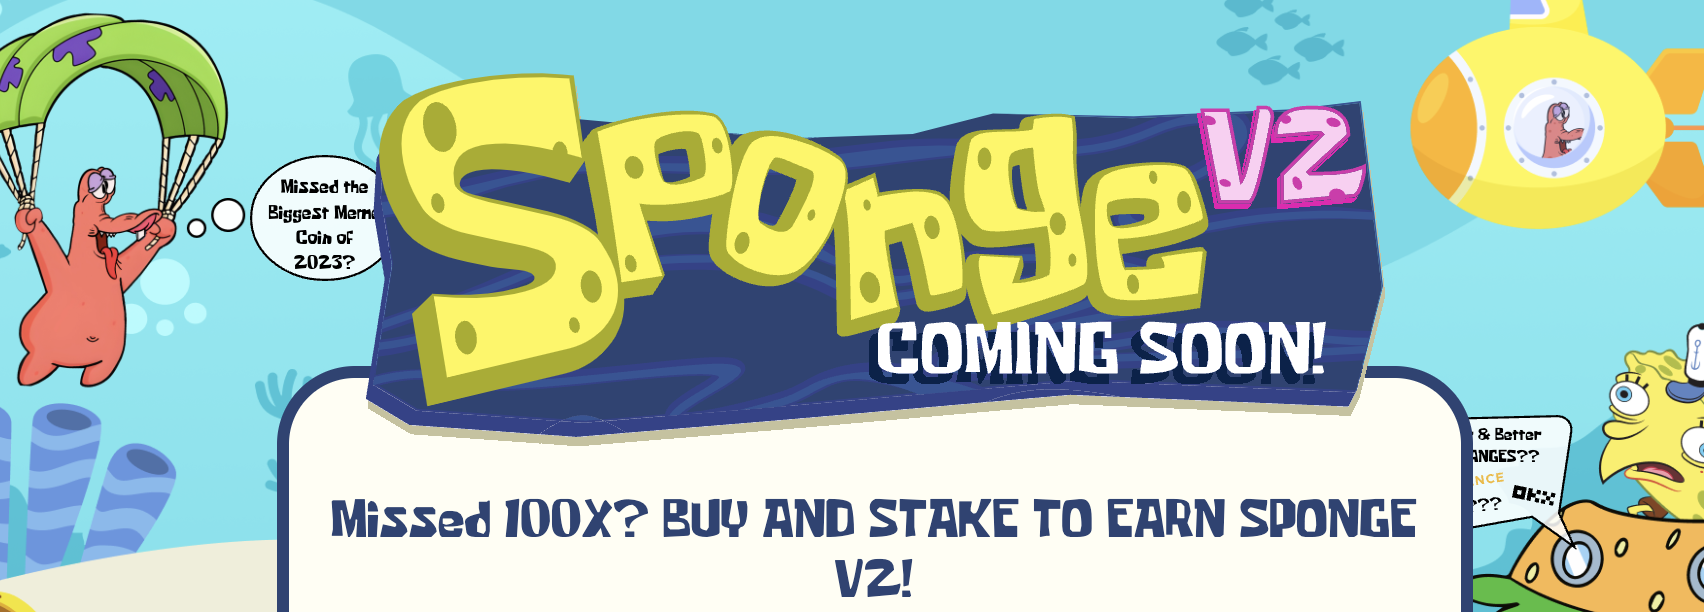 Sponge V2 best crypto to buy